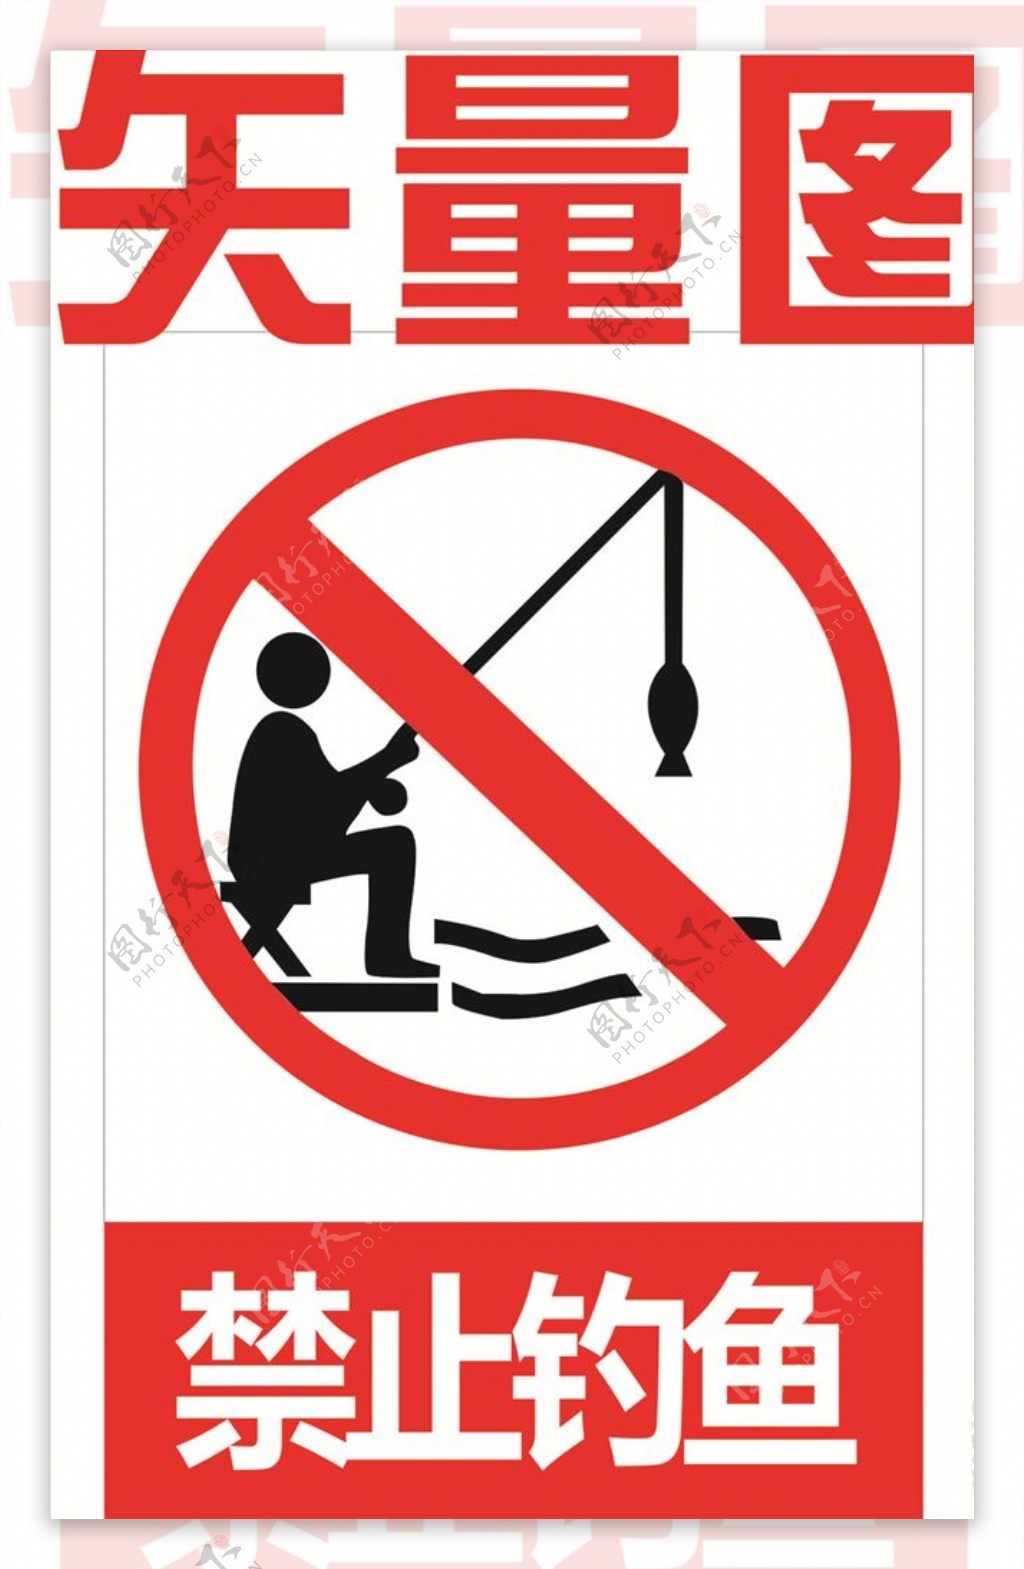 禁止钓鱼图片